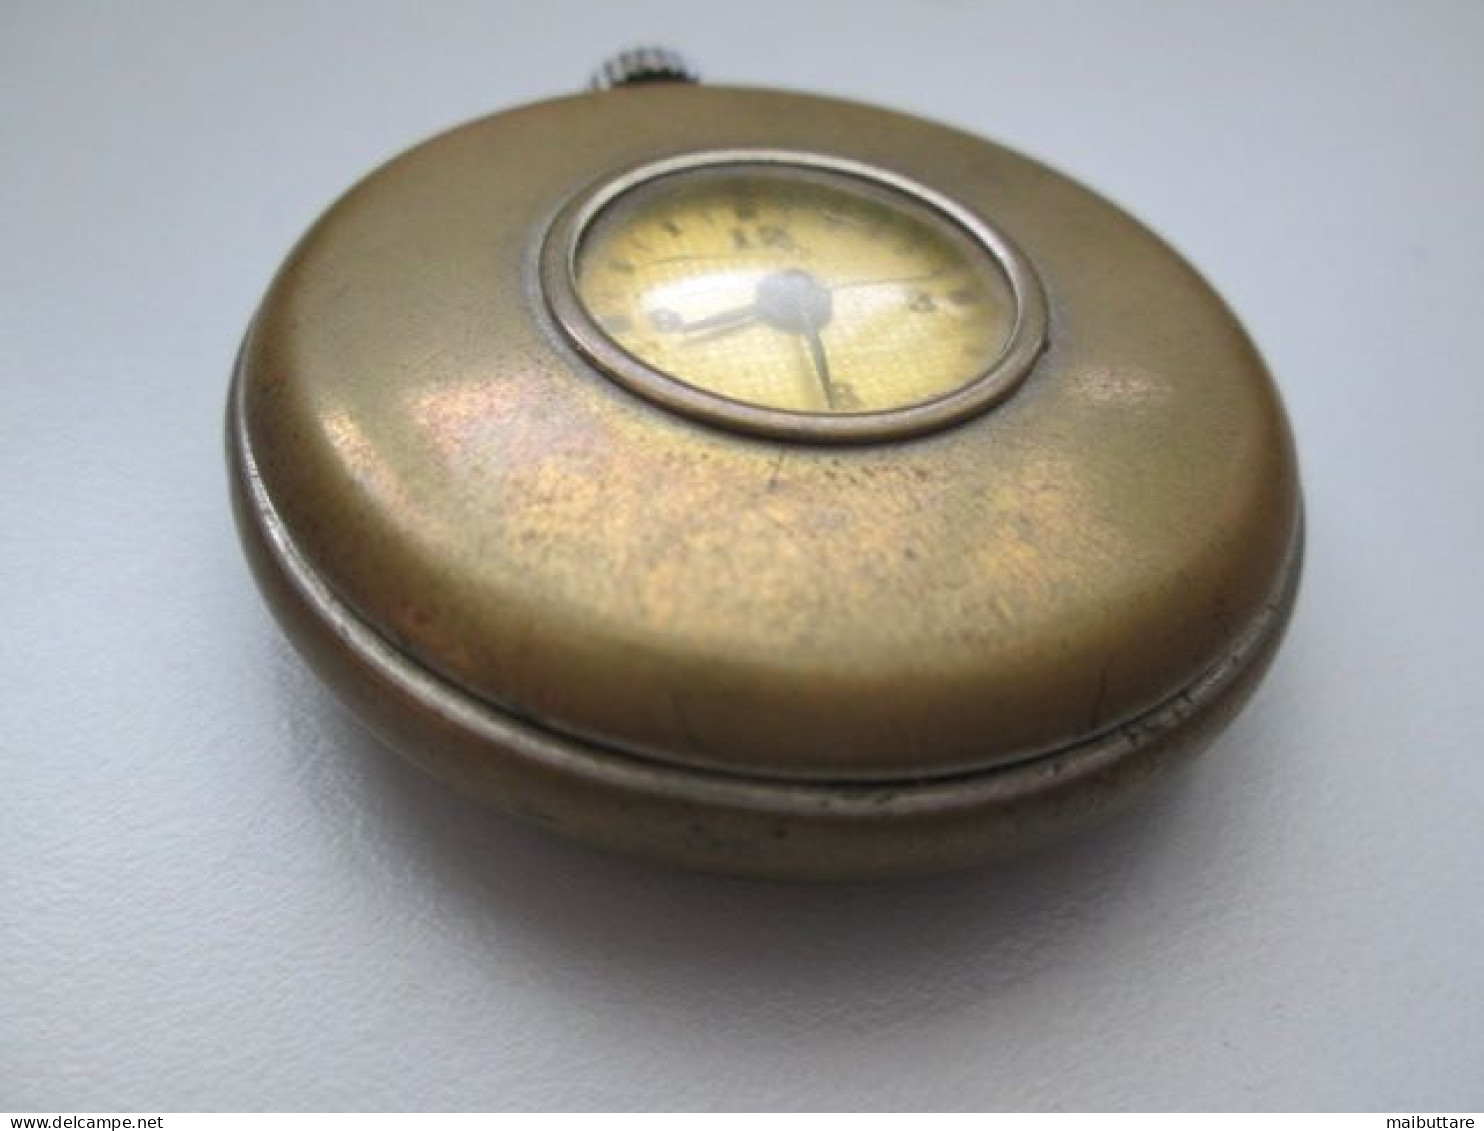 Orologio Da Tasca Made In Usa - Occhio Di Bue Diametro Complessivo Cm. 5 Diametro Quadrante Cm. 2 Oggetto Da Collezione - Antike Uhren